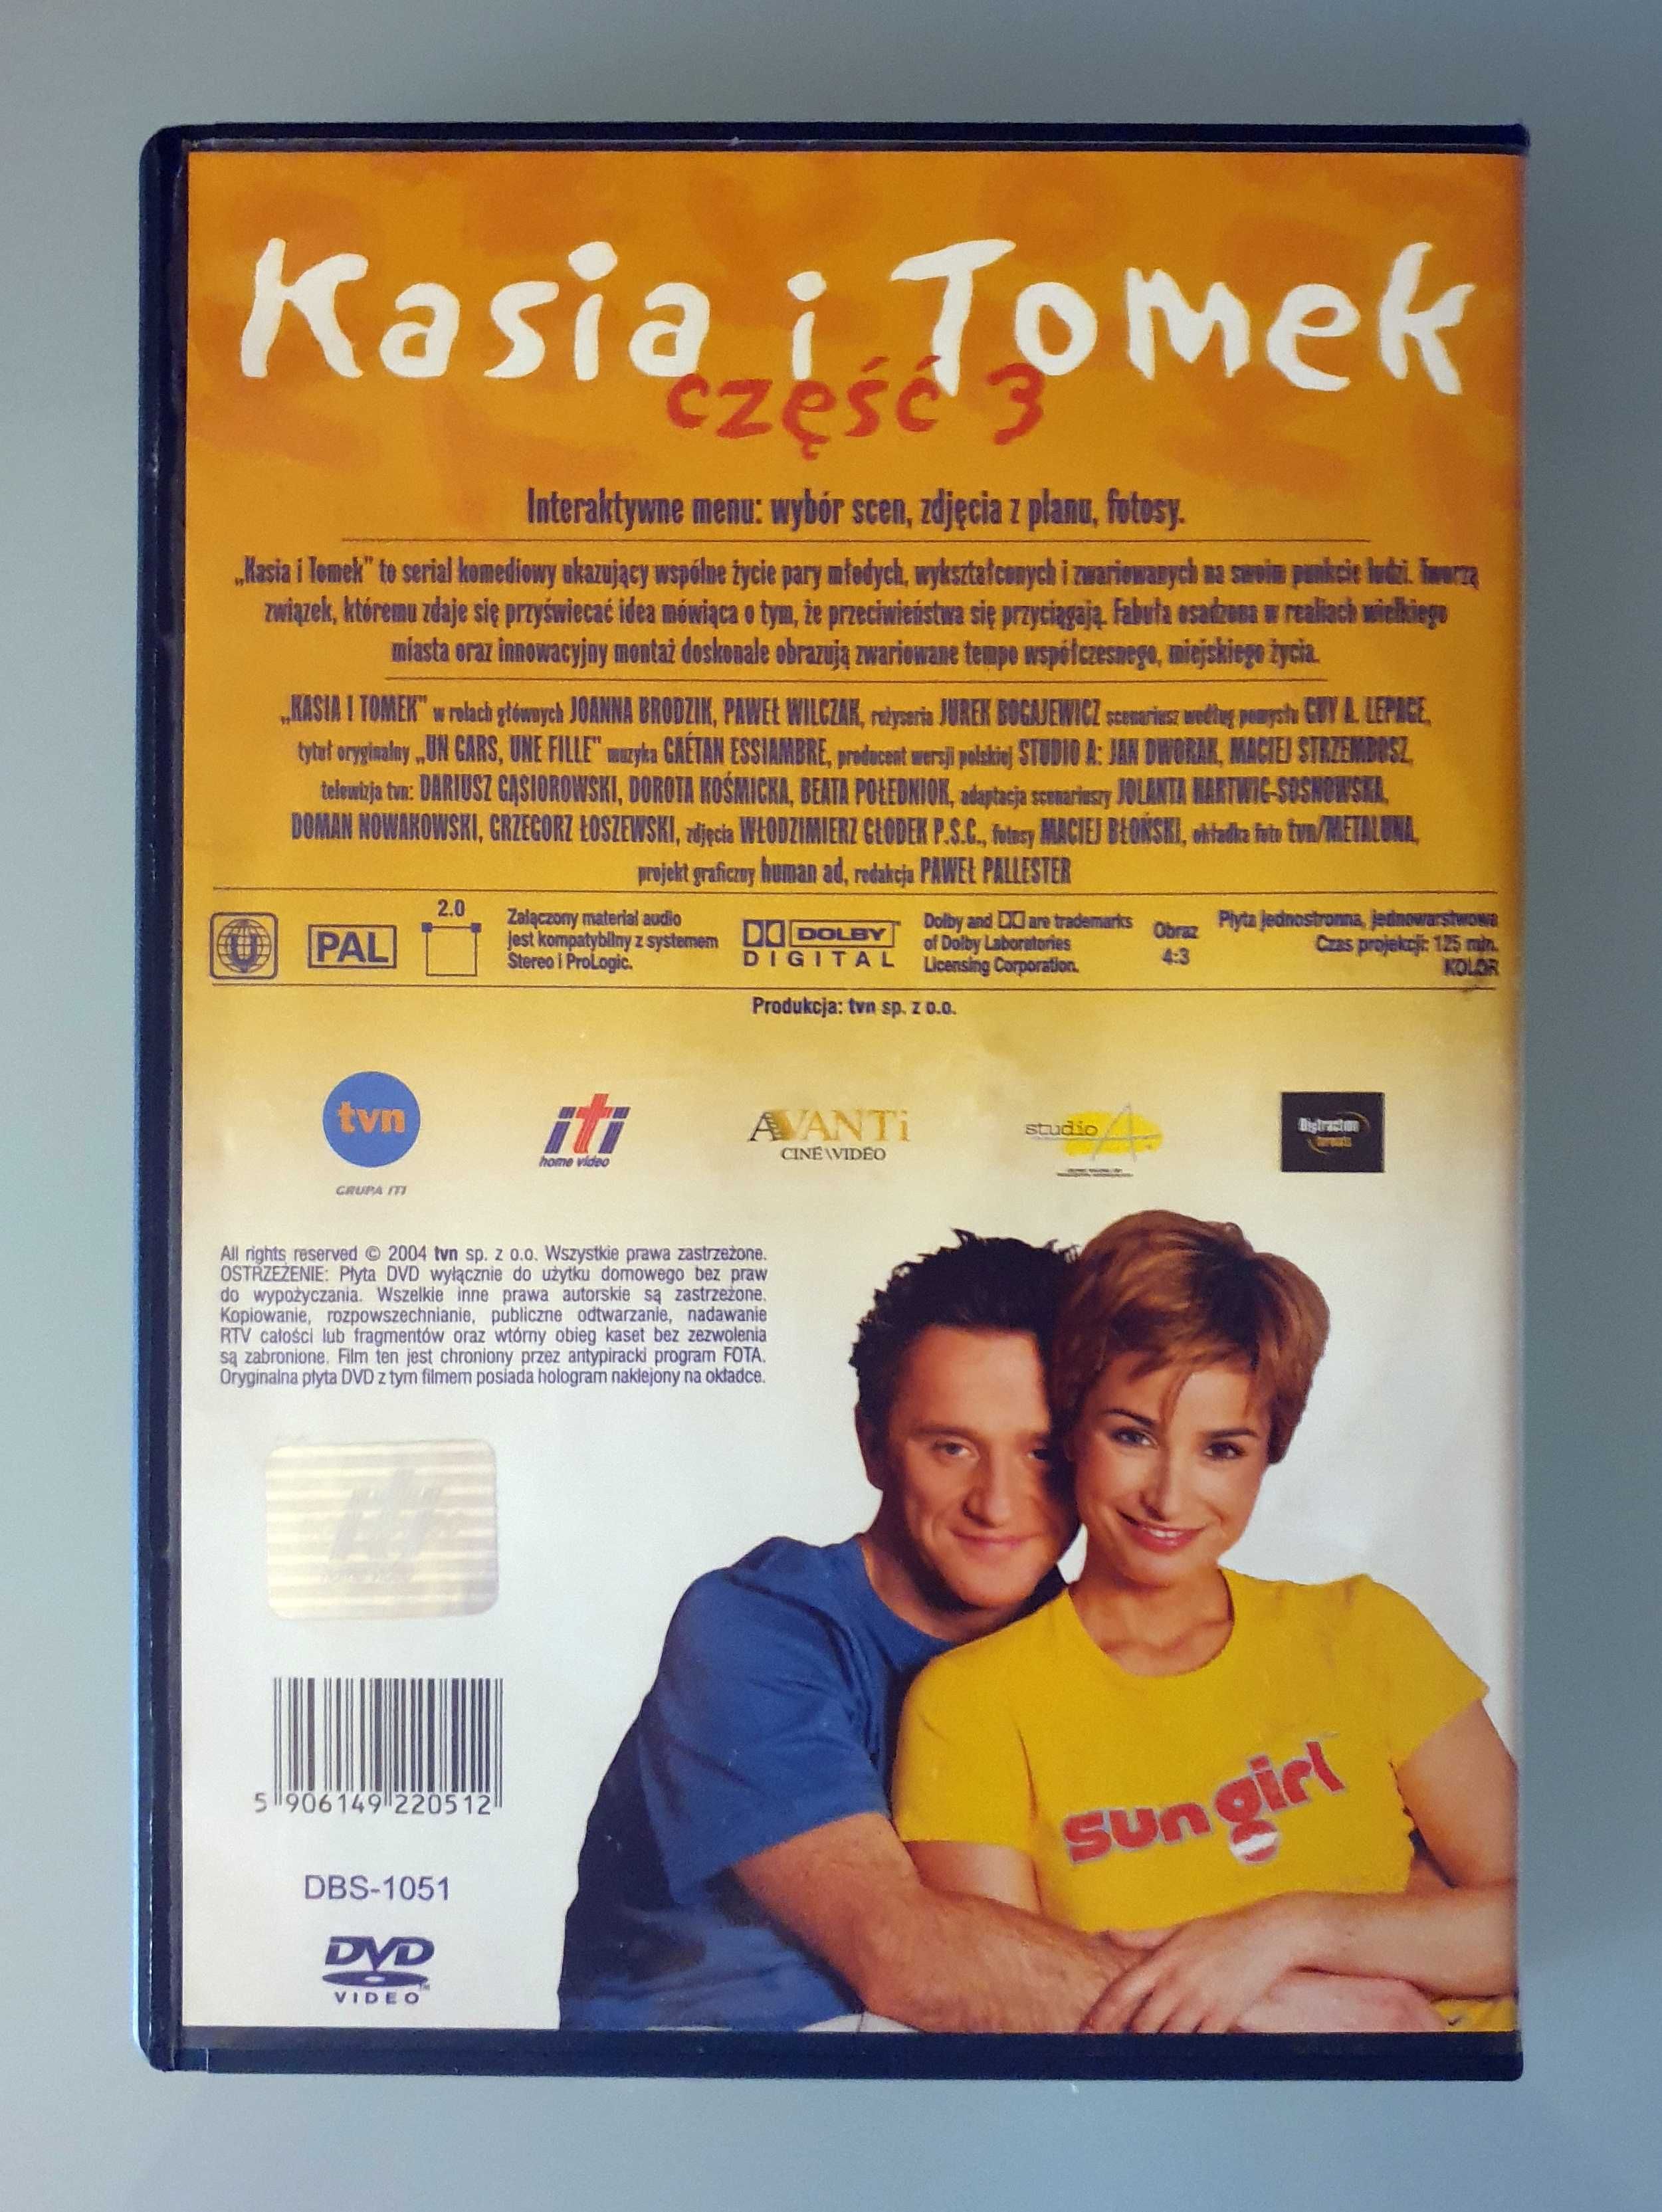 Płyta DVD / serial "Kasia i Tomek" część 3 (Brodzik, Wilczak)